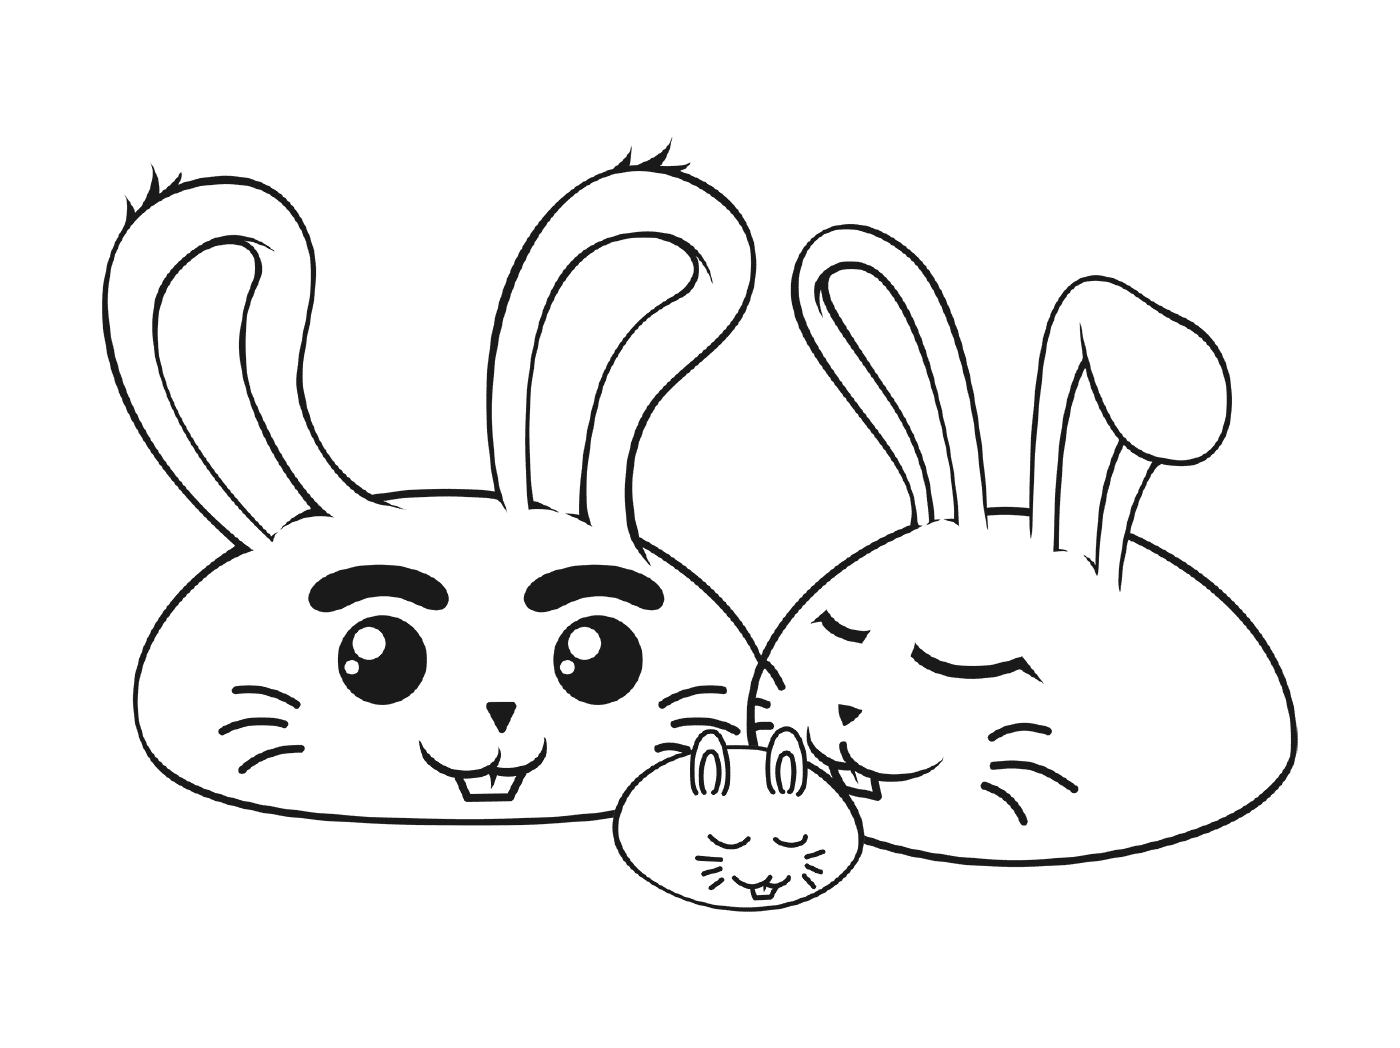  Familia de conejo kawaii 